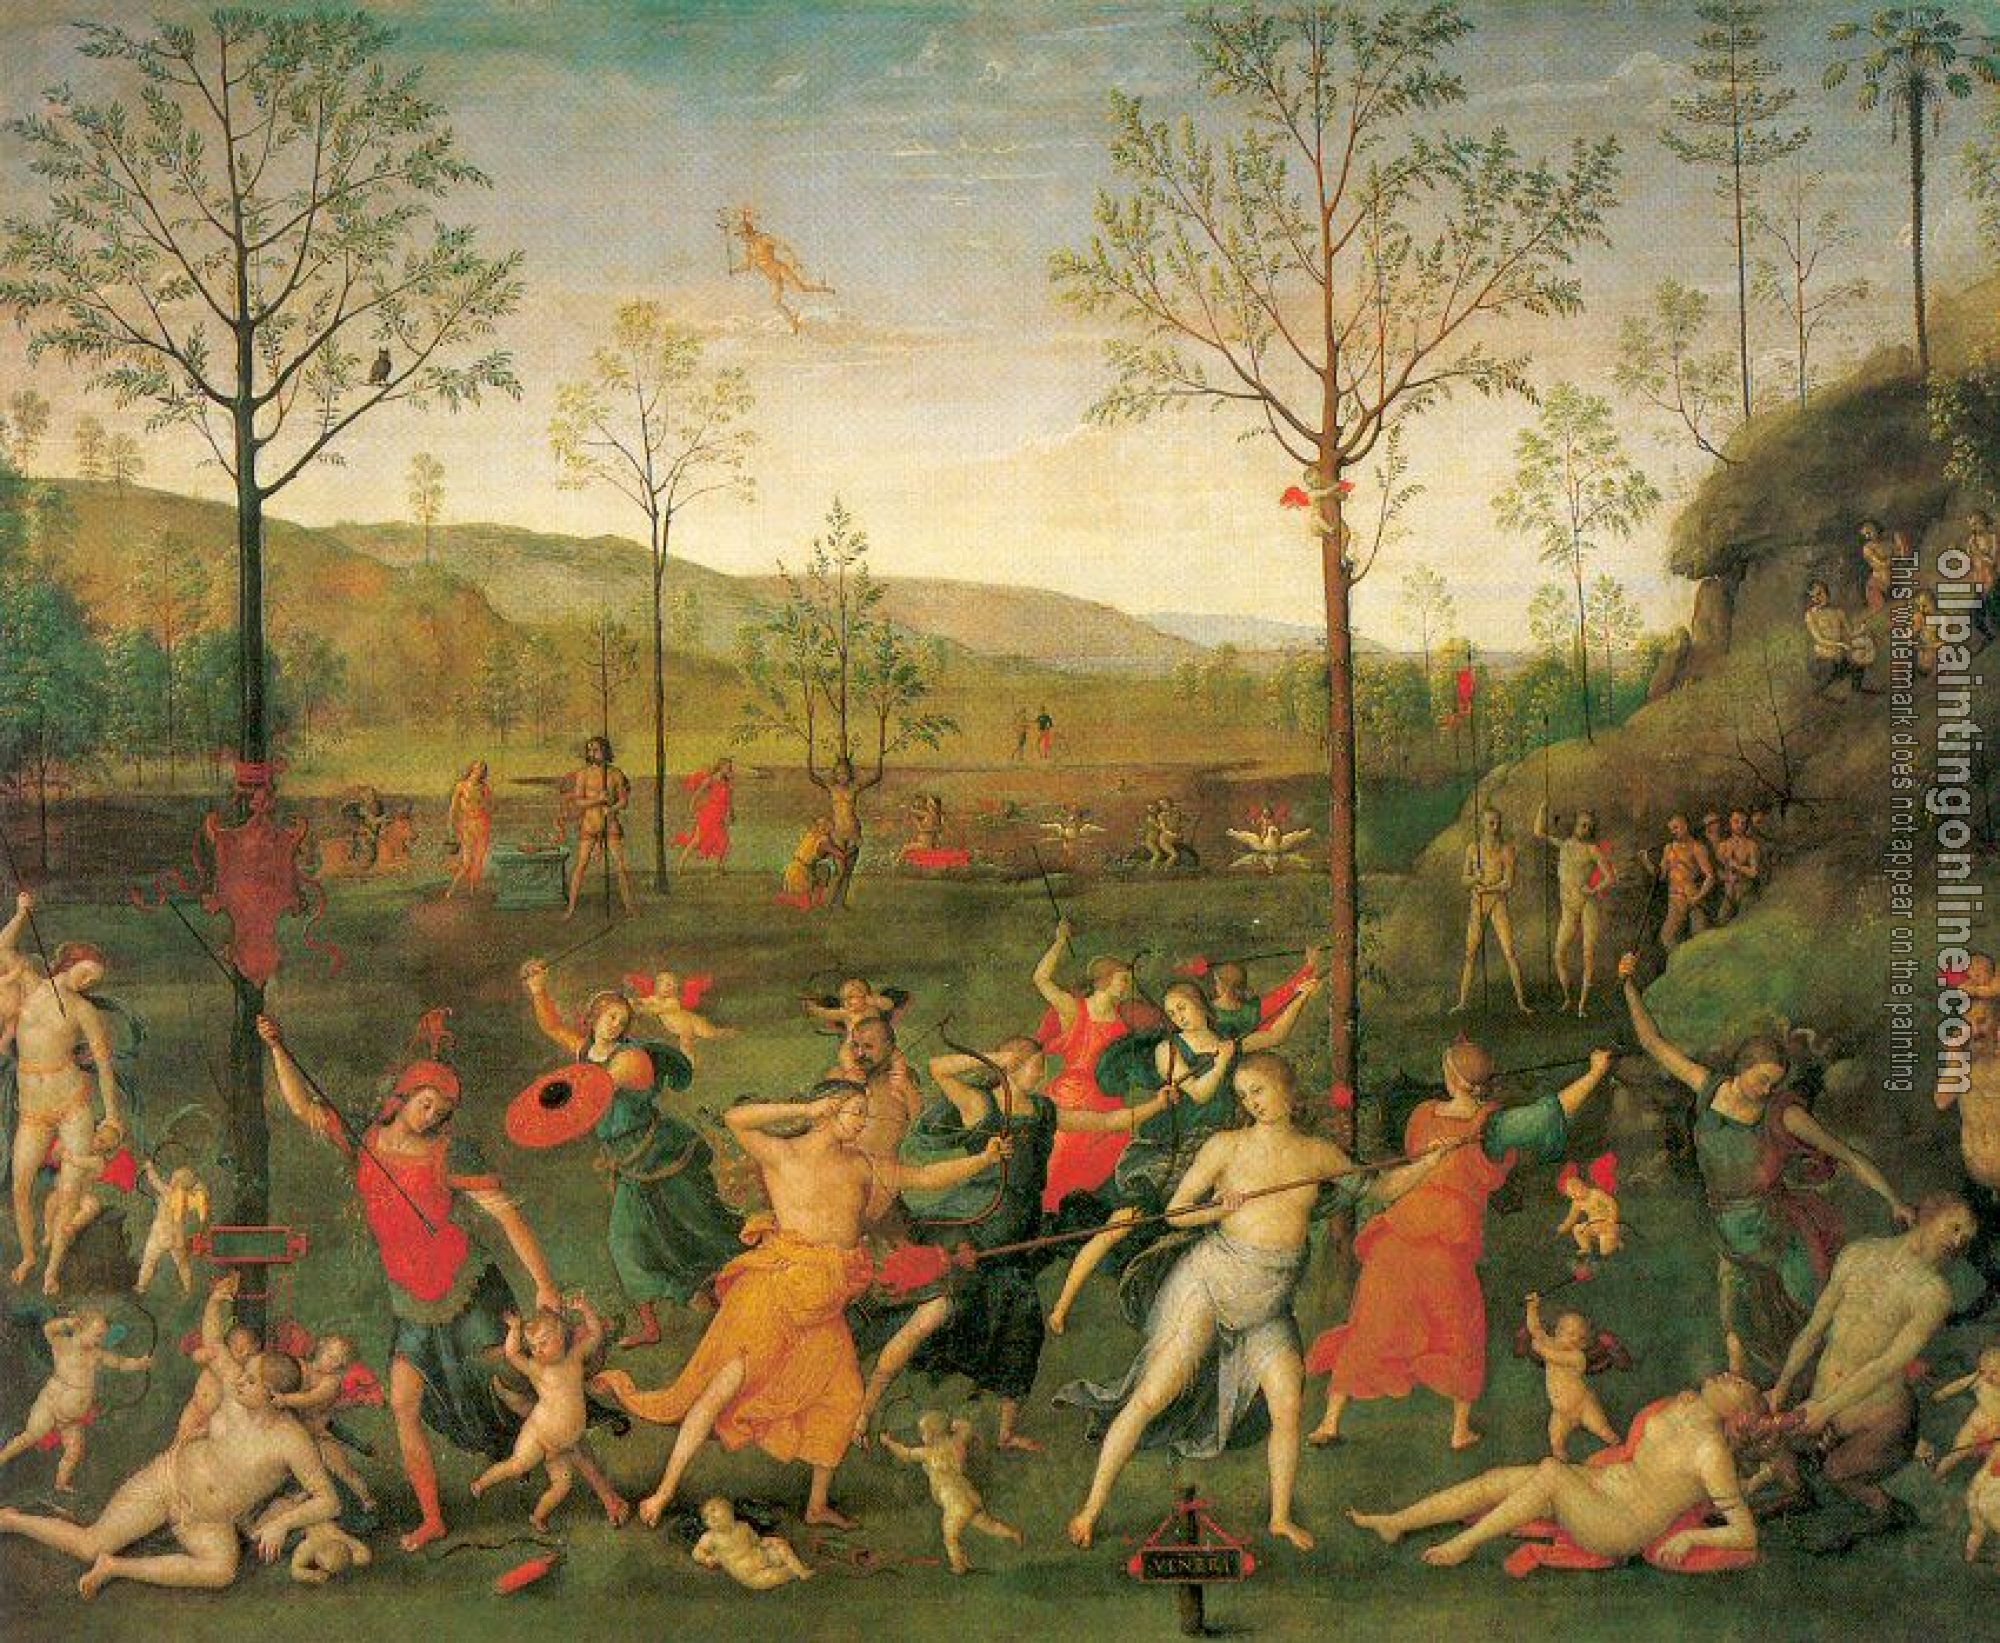 Perugino, Pietro - The Combat of Love and Chastity